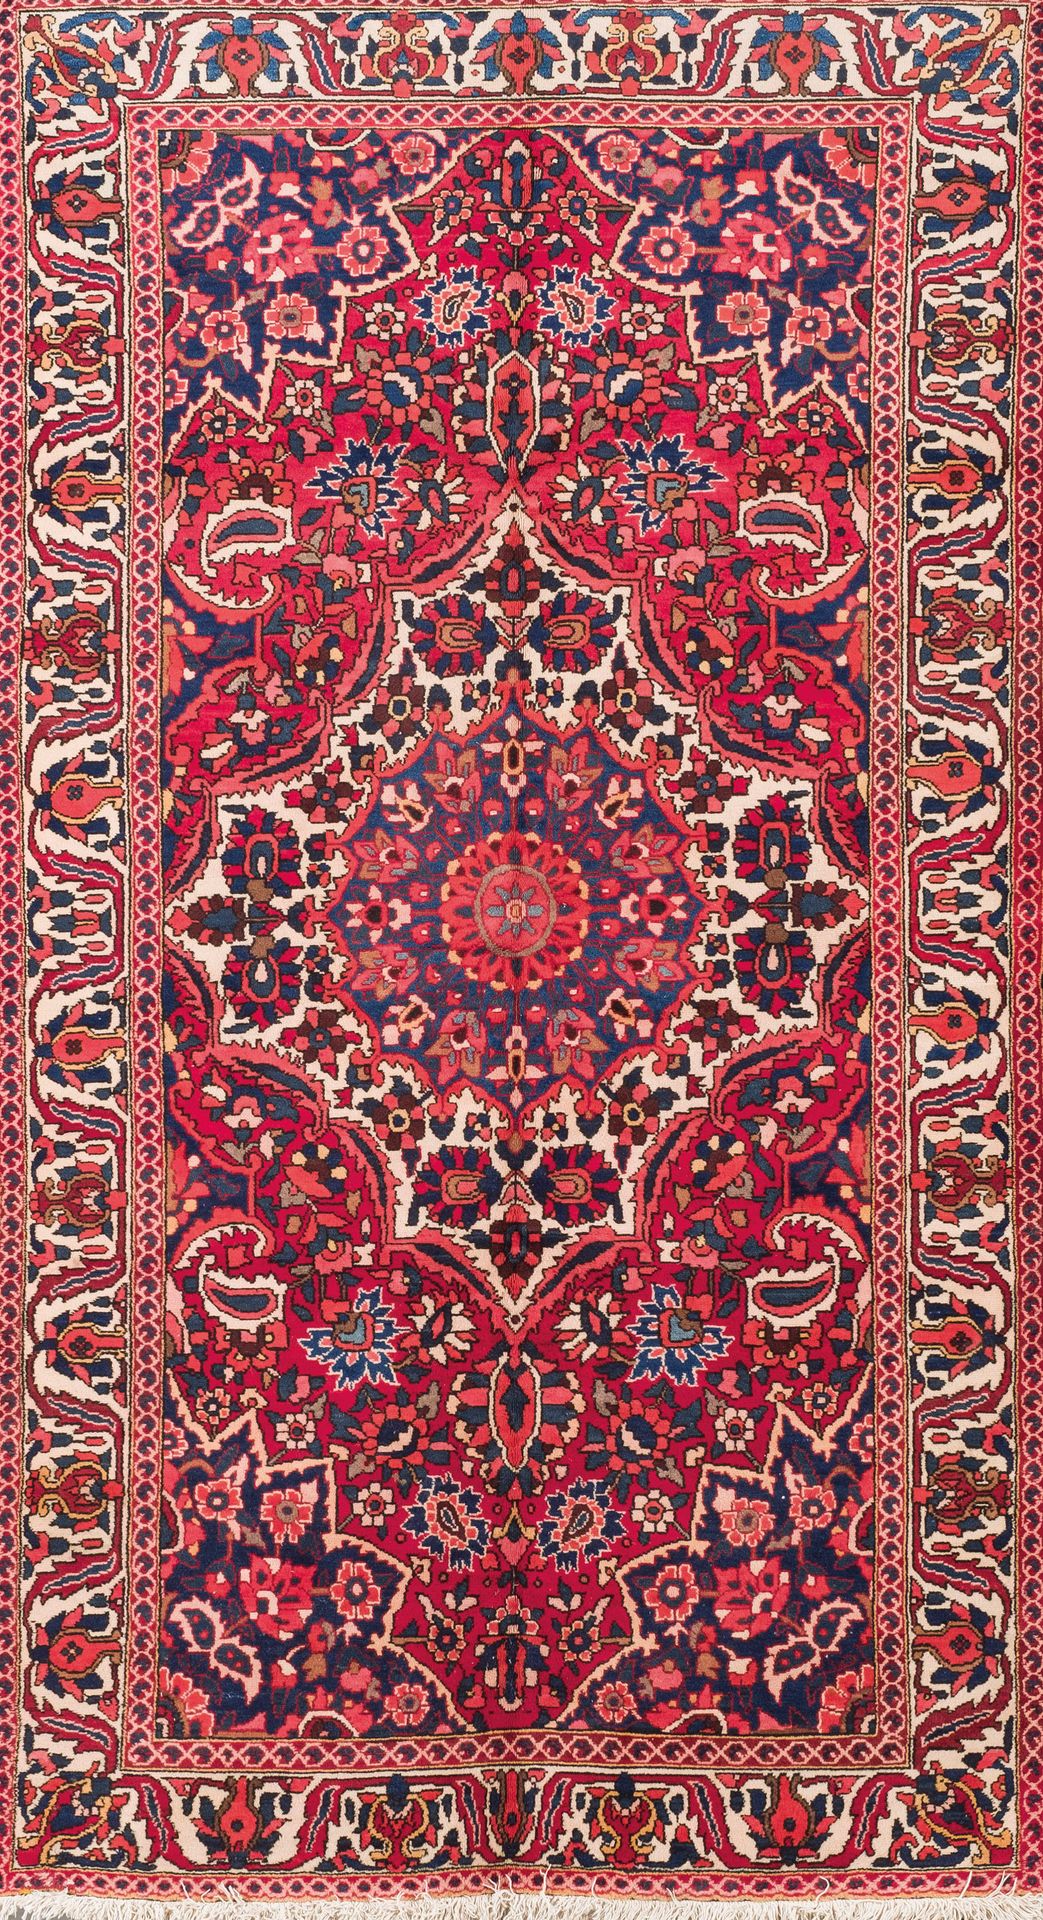 Null 羊毛制成的巴赫蒂亚里地毯。大量的植物和花卉装饰交织在一起。背景为海军蓝，带有红色、紫红色和绿色的色调。S. XX.250x150厘米